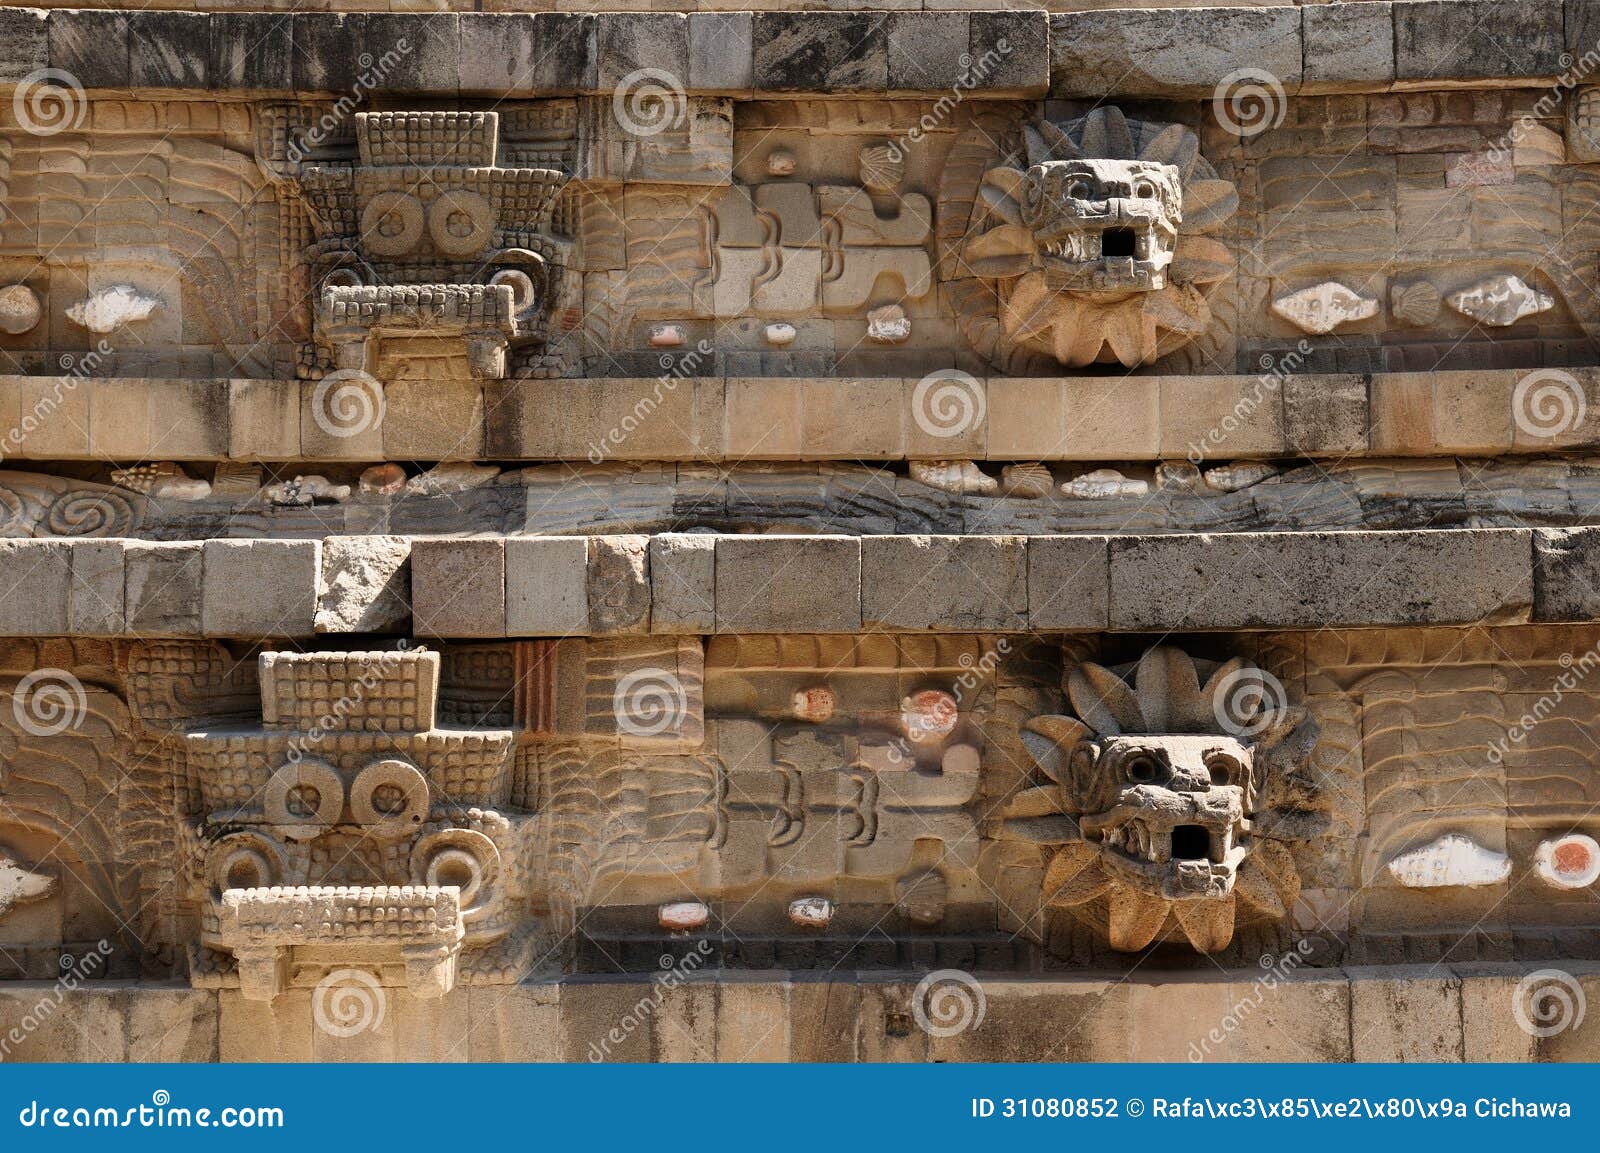 ruinas del azteca de teotihuacan cerca de ciudad de méxico foto de